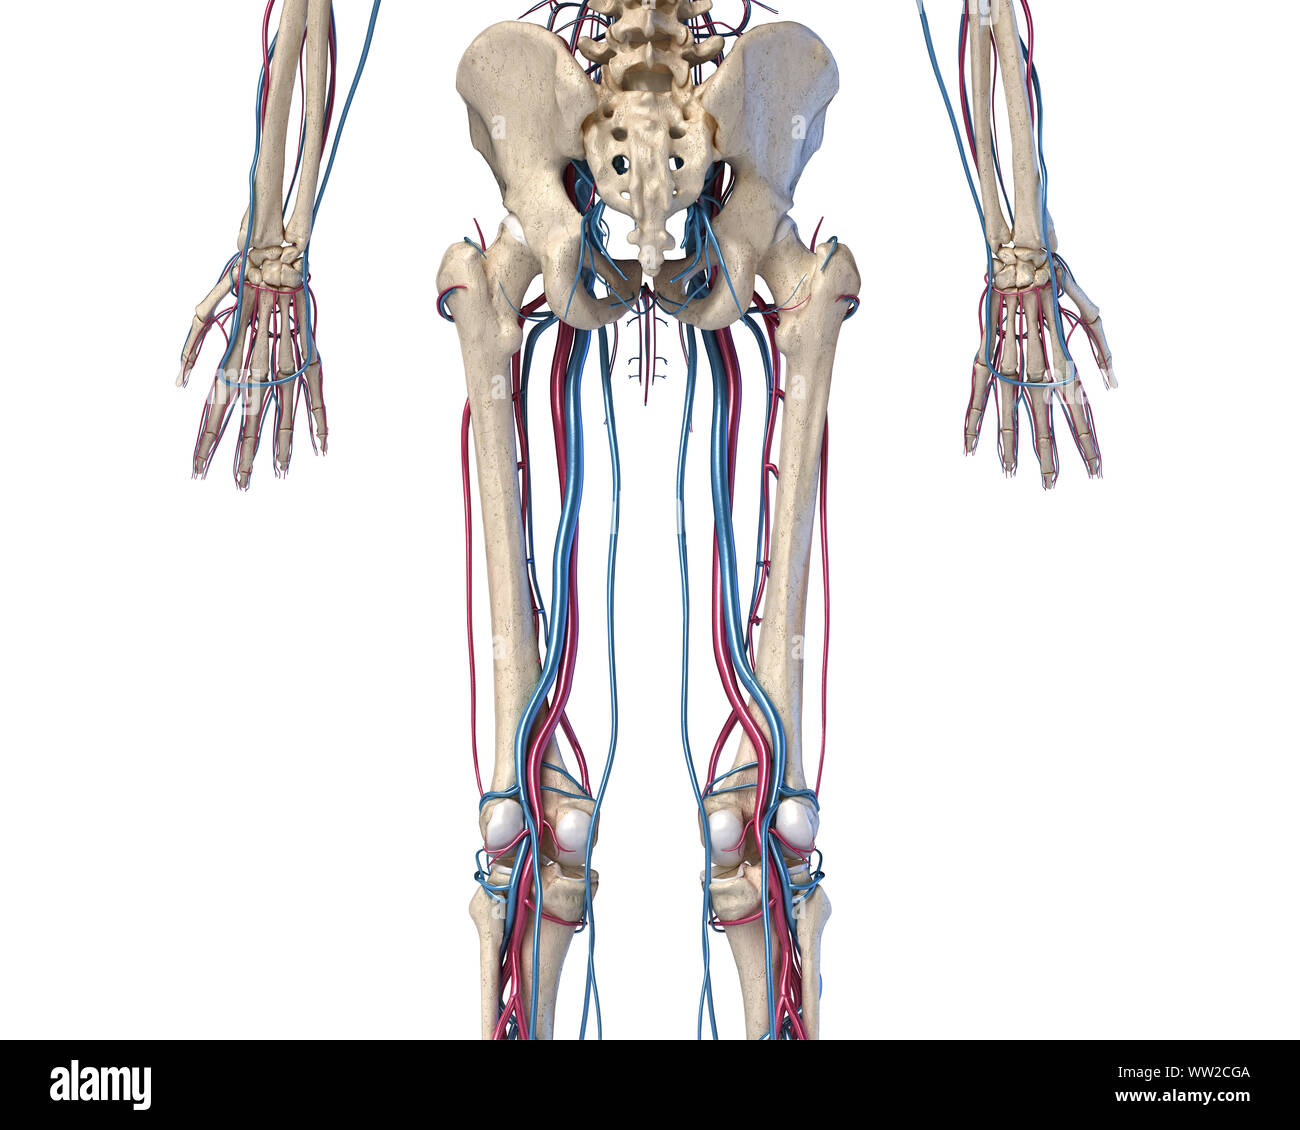 Menschliche Körper Anatomie. 3D-Darstellung der Hüfte, Beine und Hände Skelett- und Herz-Kreislauf-System. Von der Rückseite aus gesehen. Auf weissem Hintergrund. Stockfoto